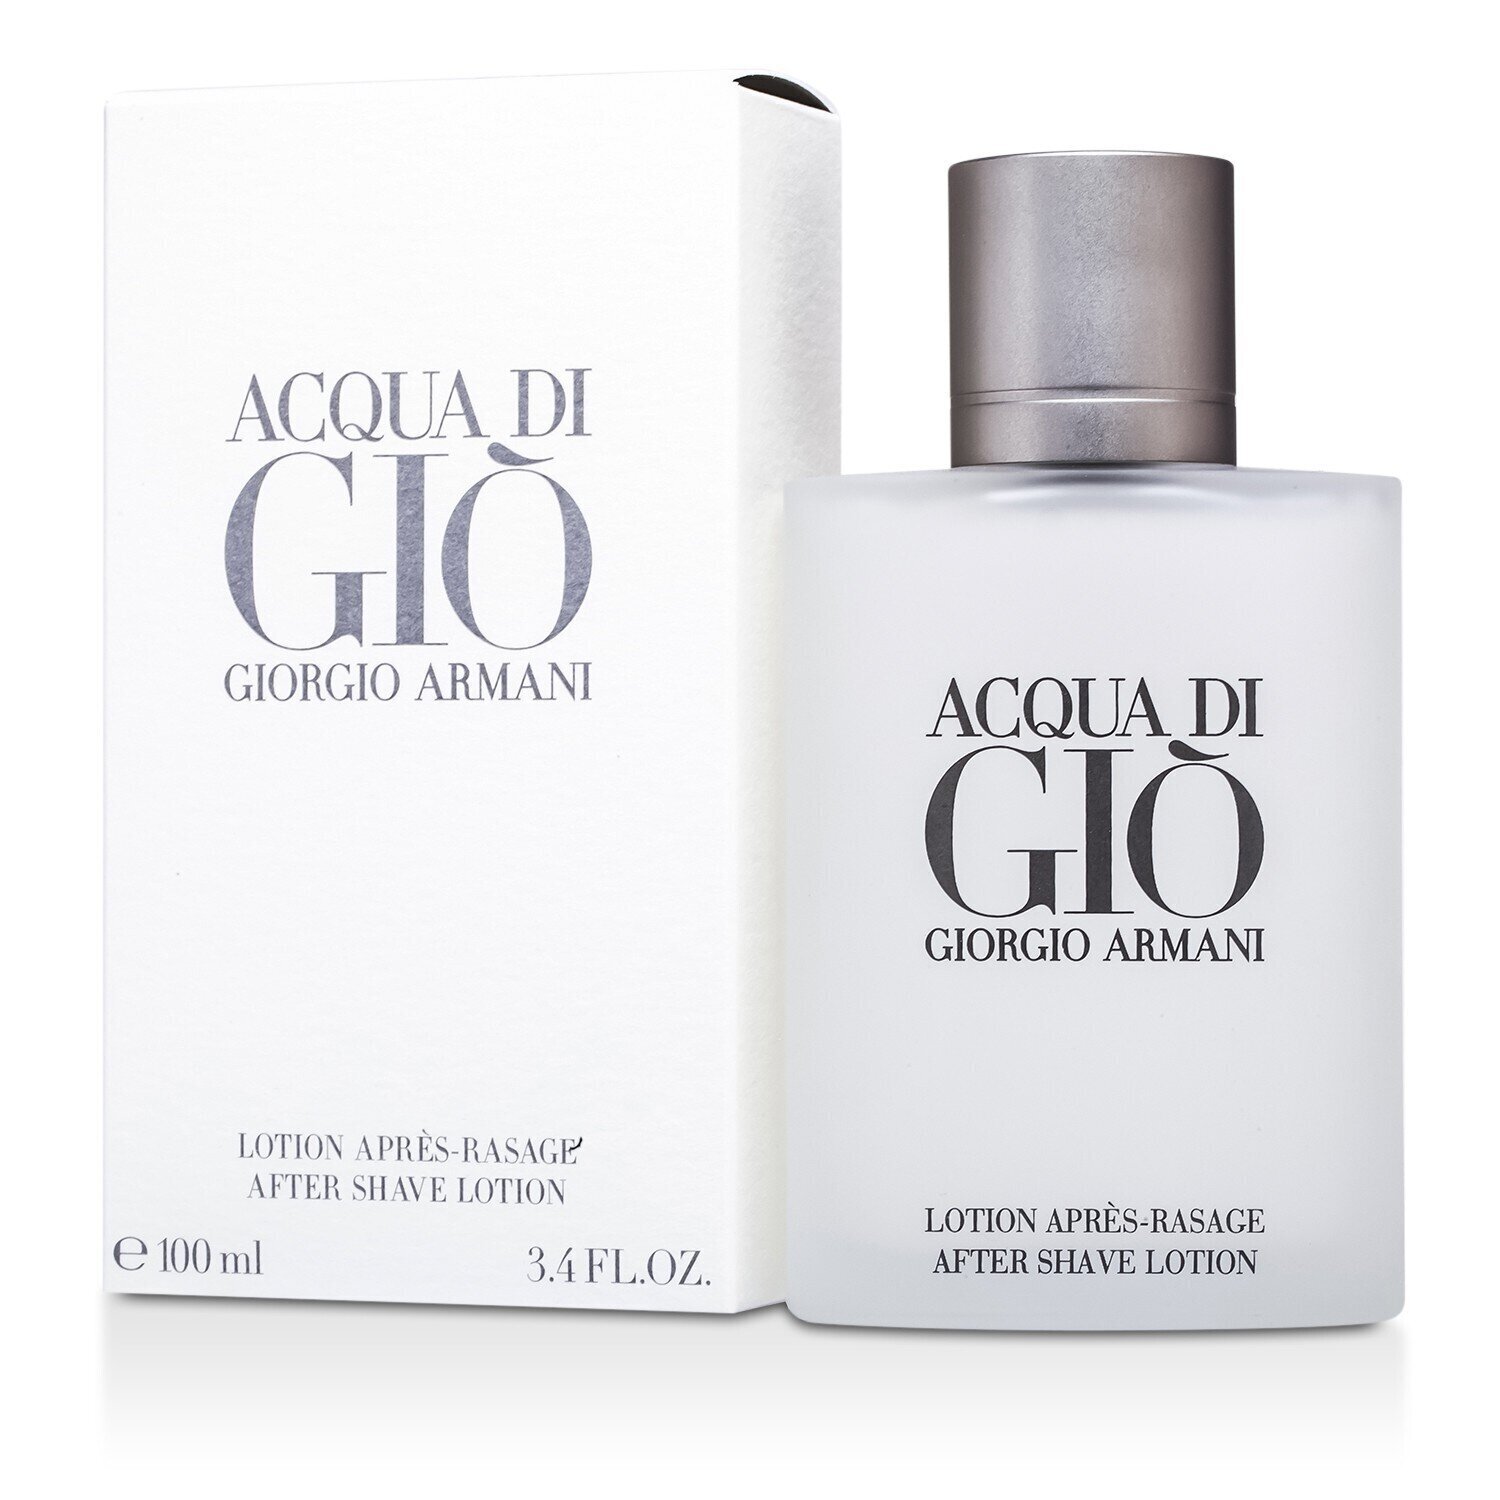 亞曼尼 Giorgio Armani - 剃鬚後紓緩水 Acqua Di Gio After Shave Lotion 100ml